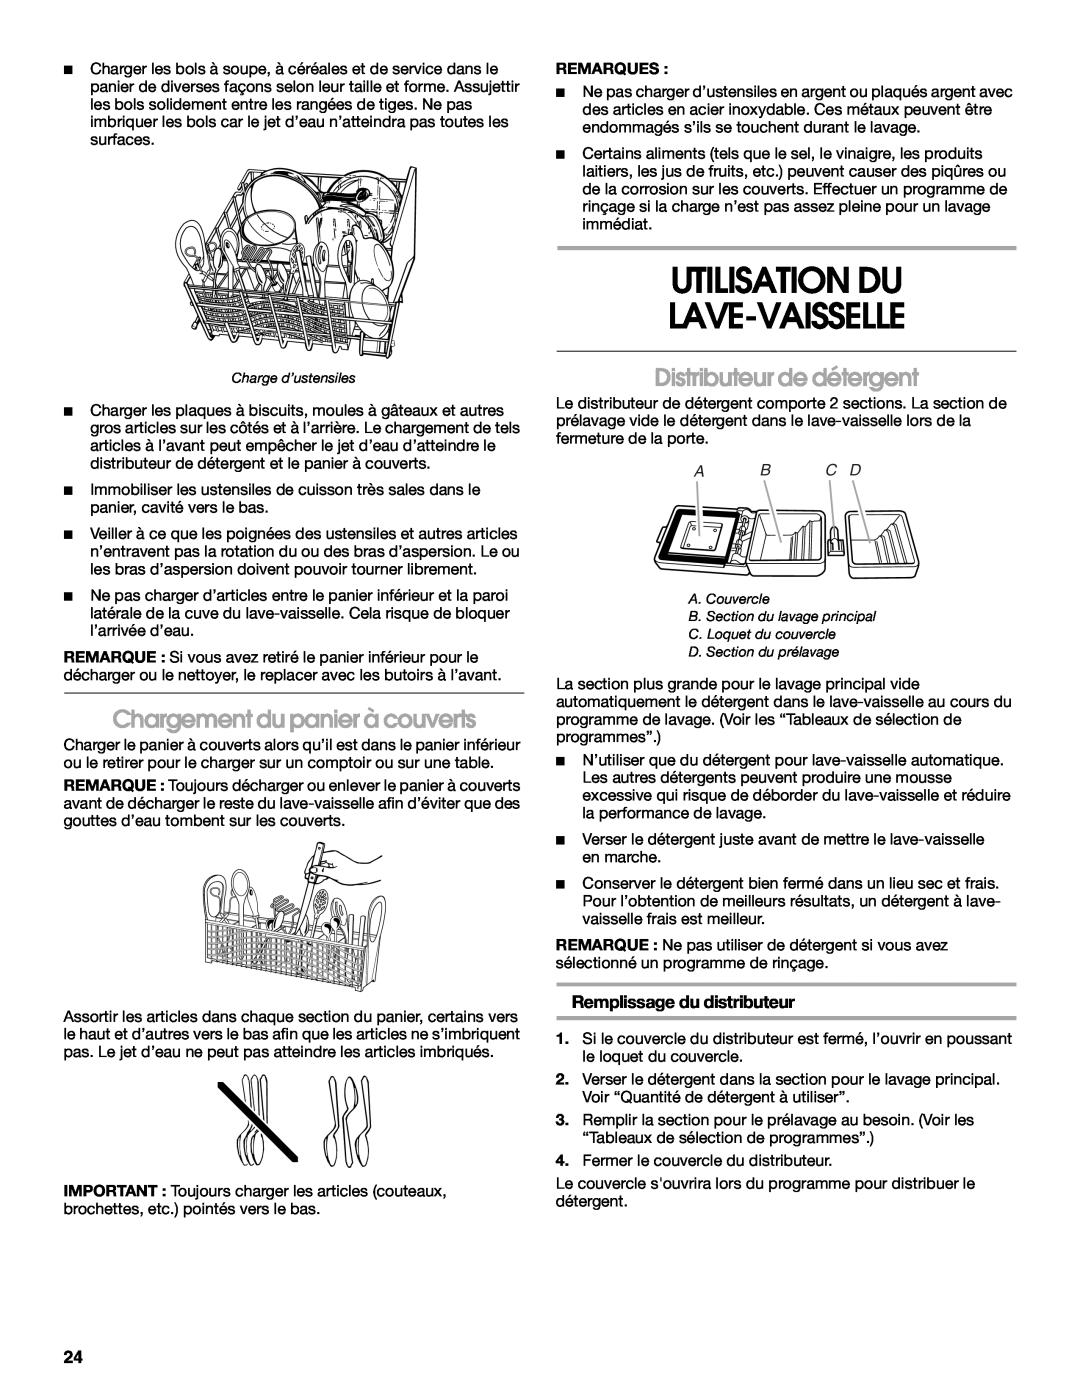 Whirlpool TUD6900 Utilisation Du Lave-Vaisselle, Chargement du panier à couverts, Distributeur de détergent, Remarques 